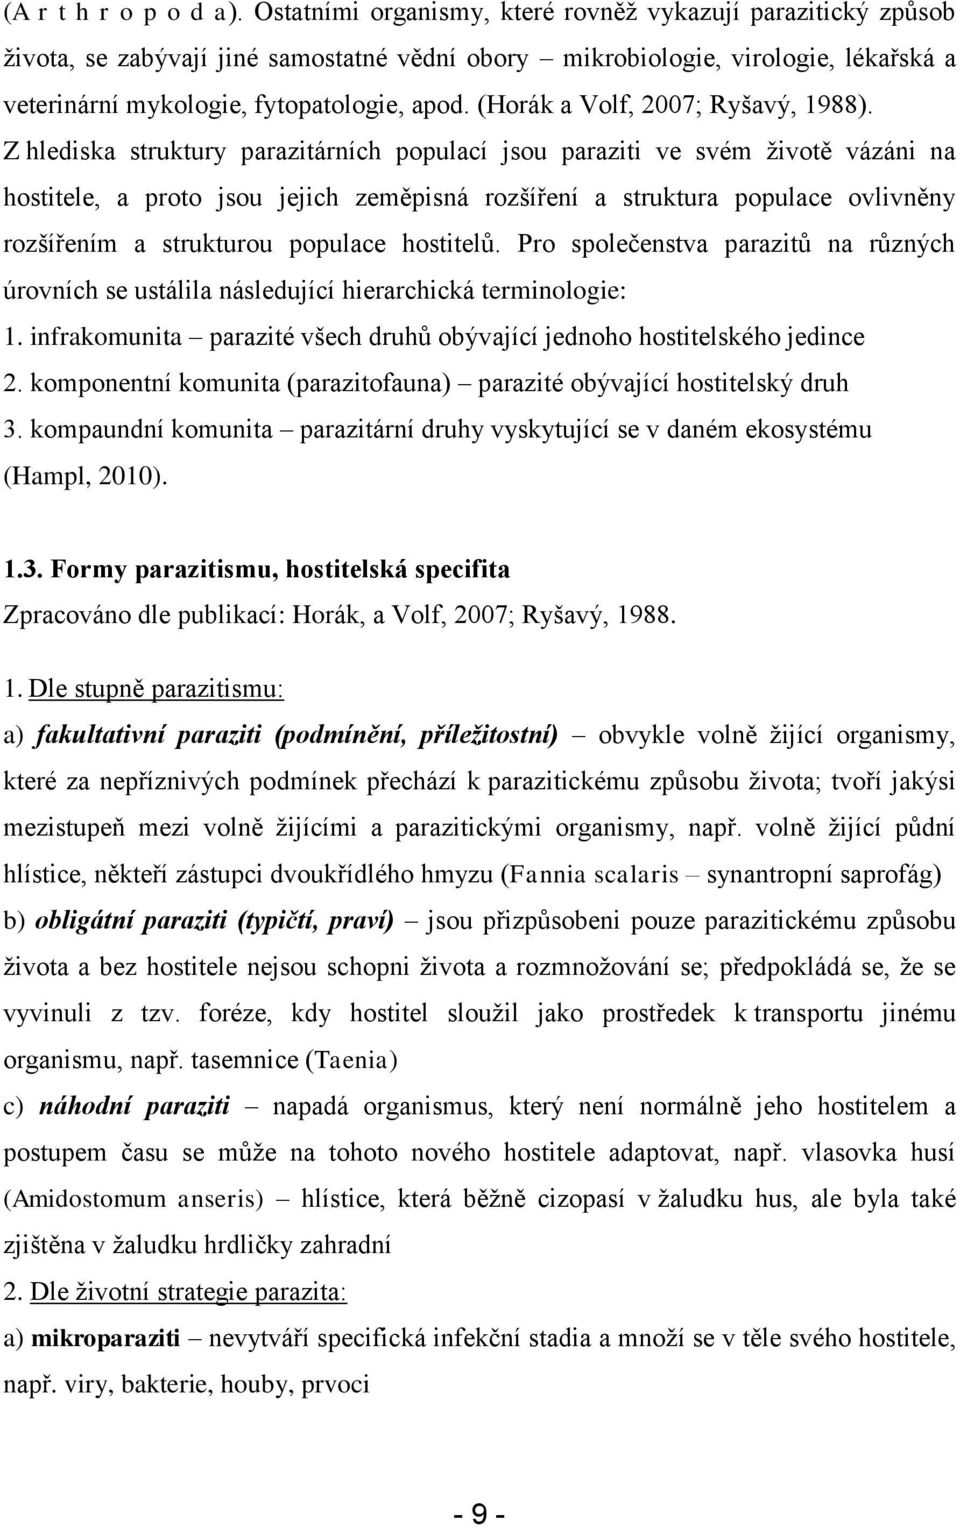 (Horák a Volf, 2007; Ryšavý, 1988).